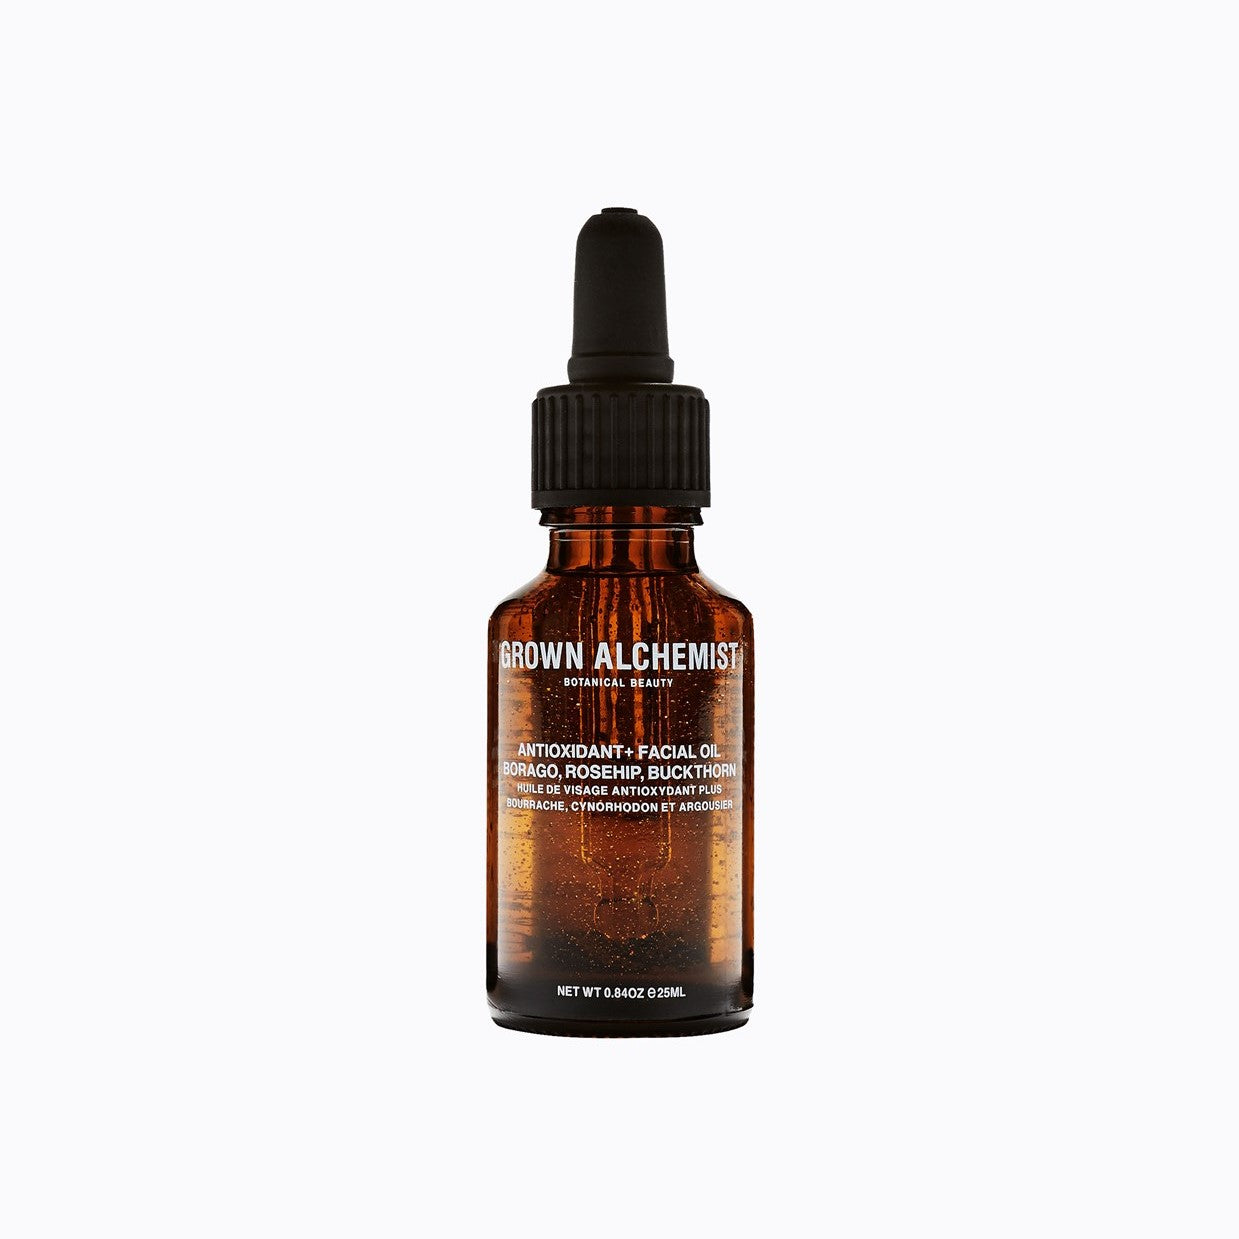 Anti-Oxidant+ Facial Oil: Borago, Rosehip & Buckthorn Berry